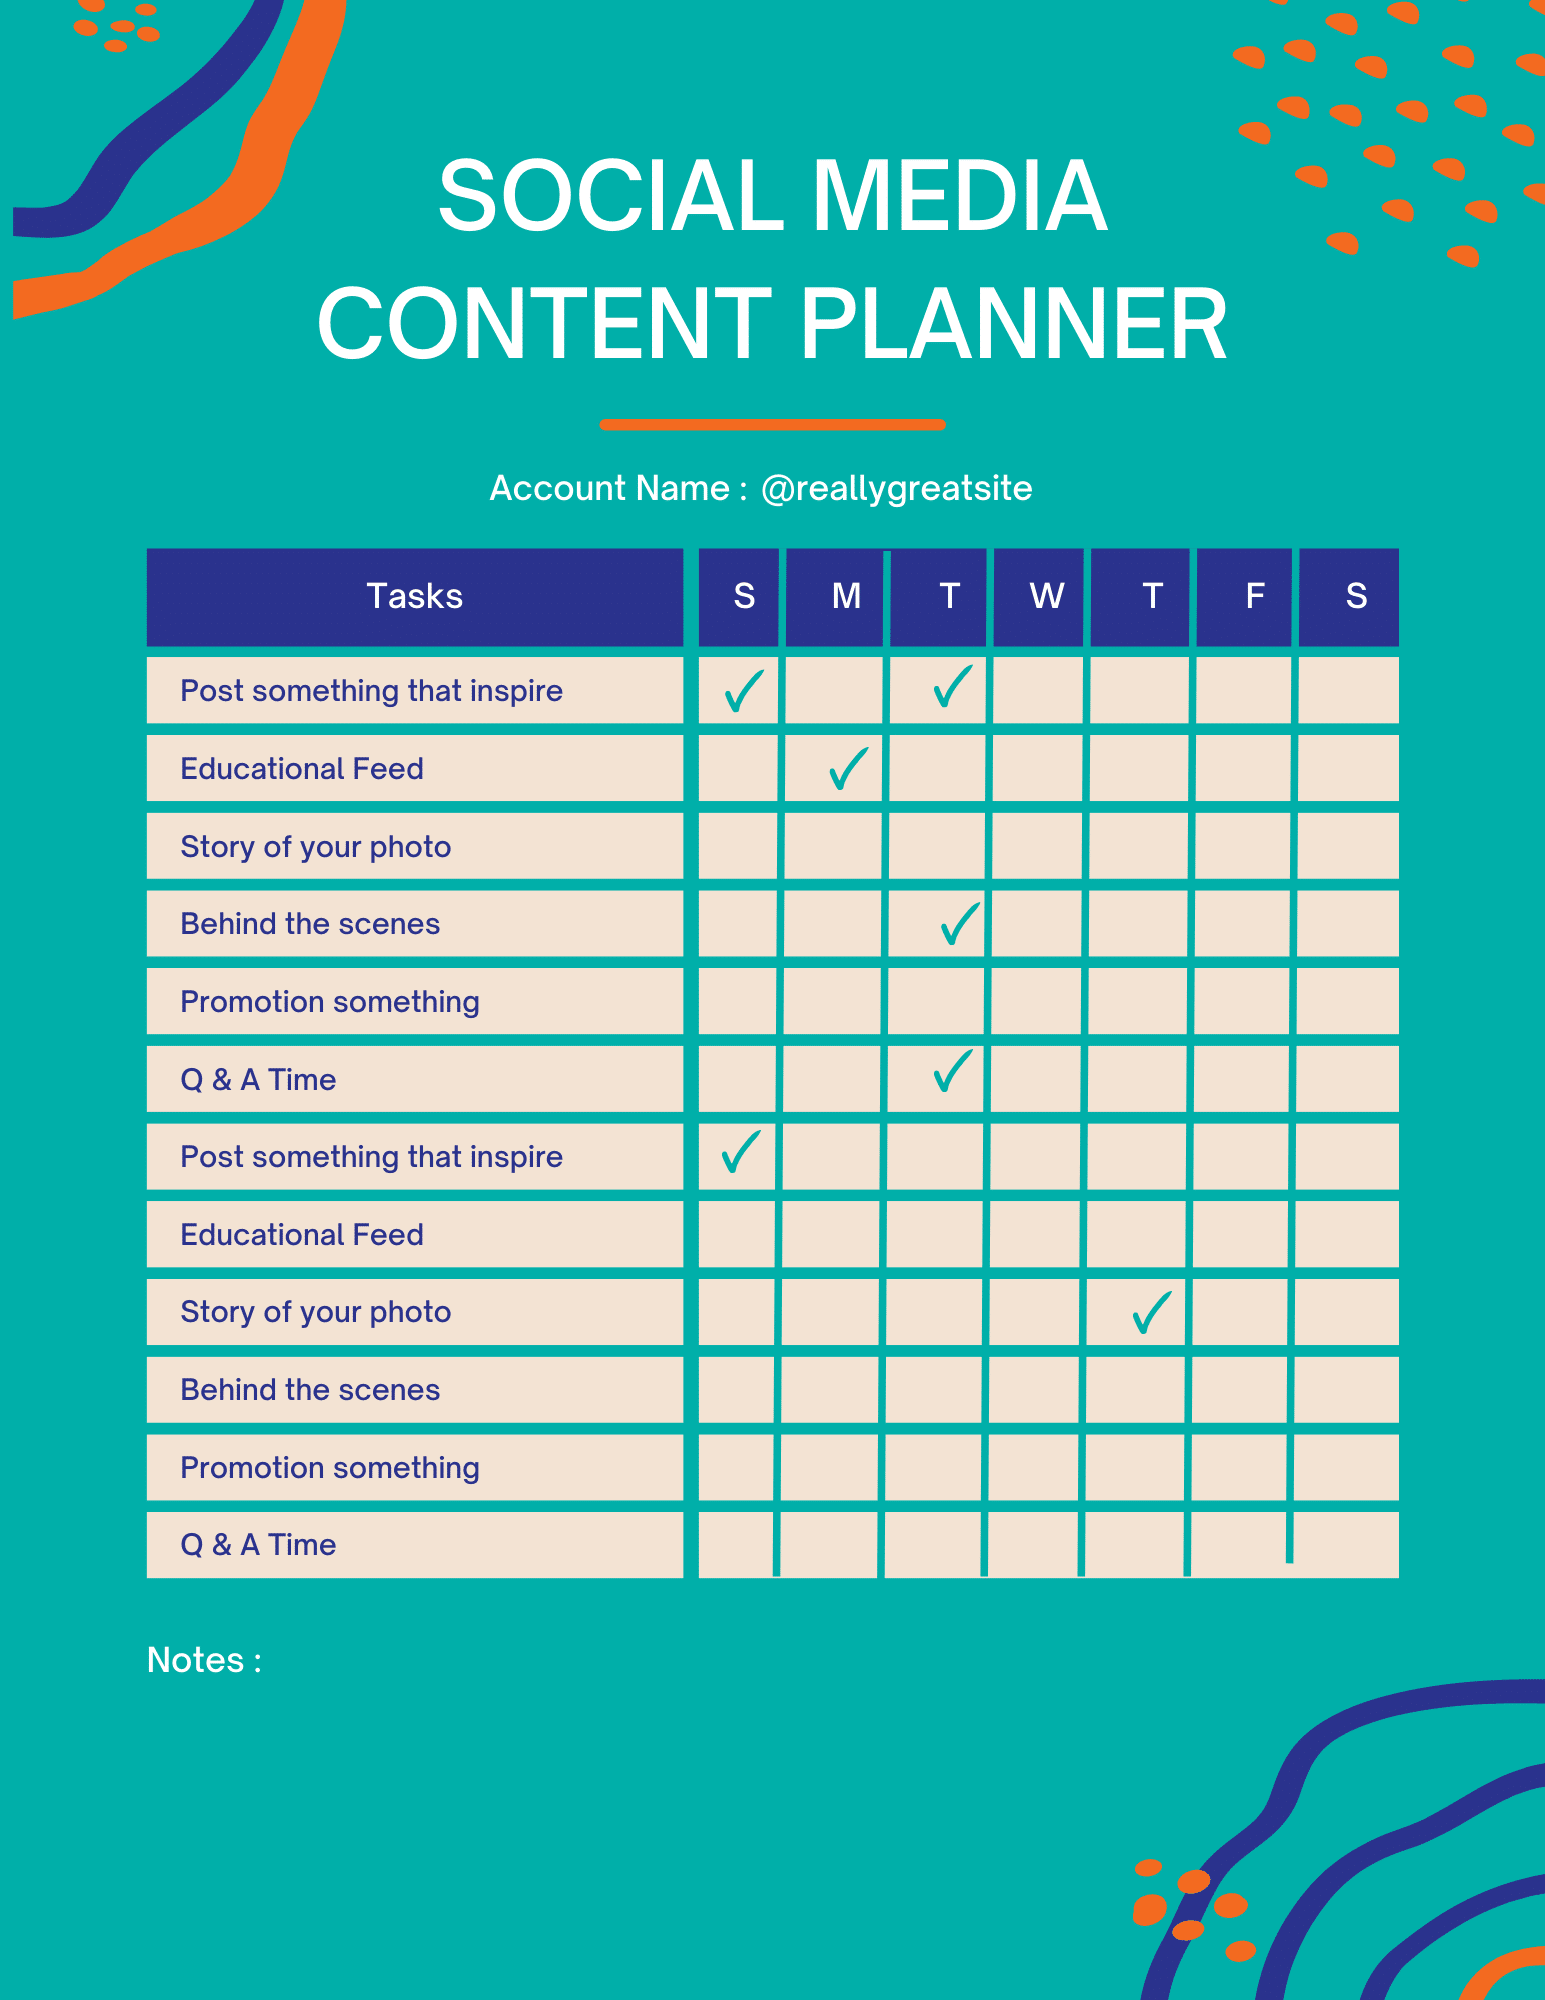 Social media content planner